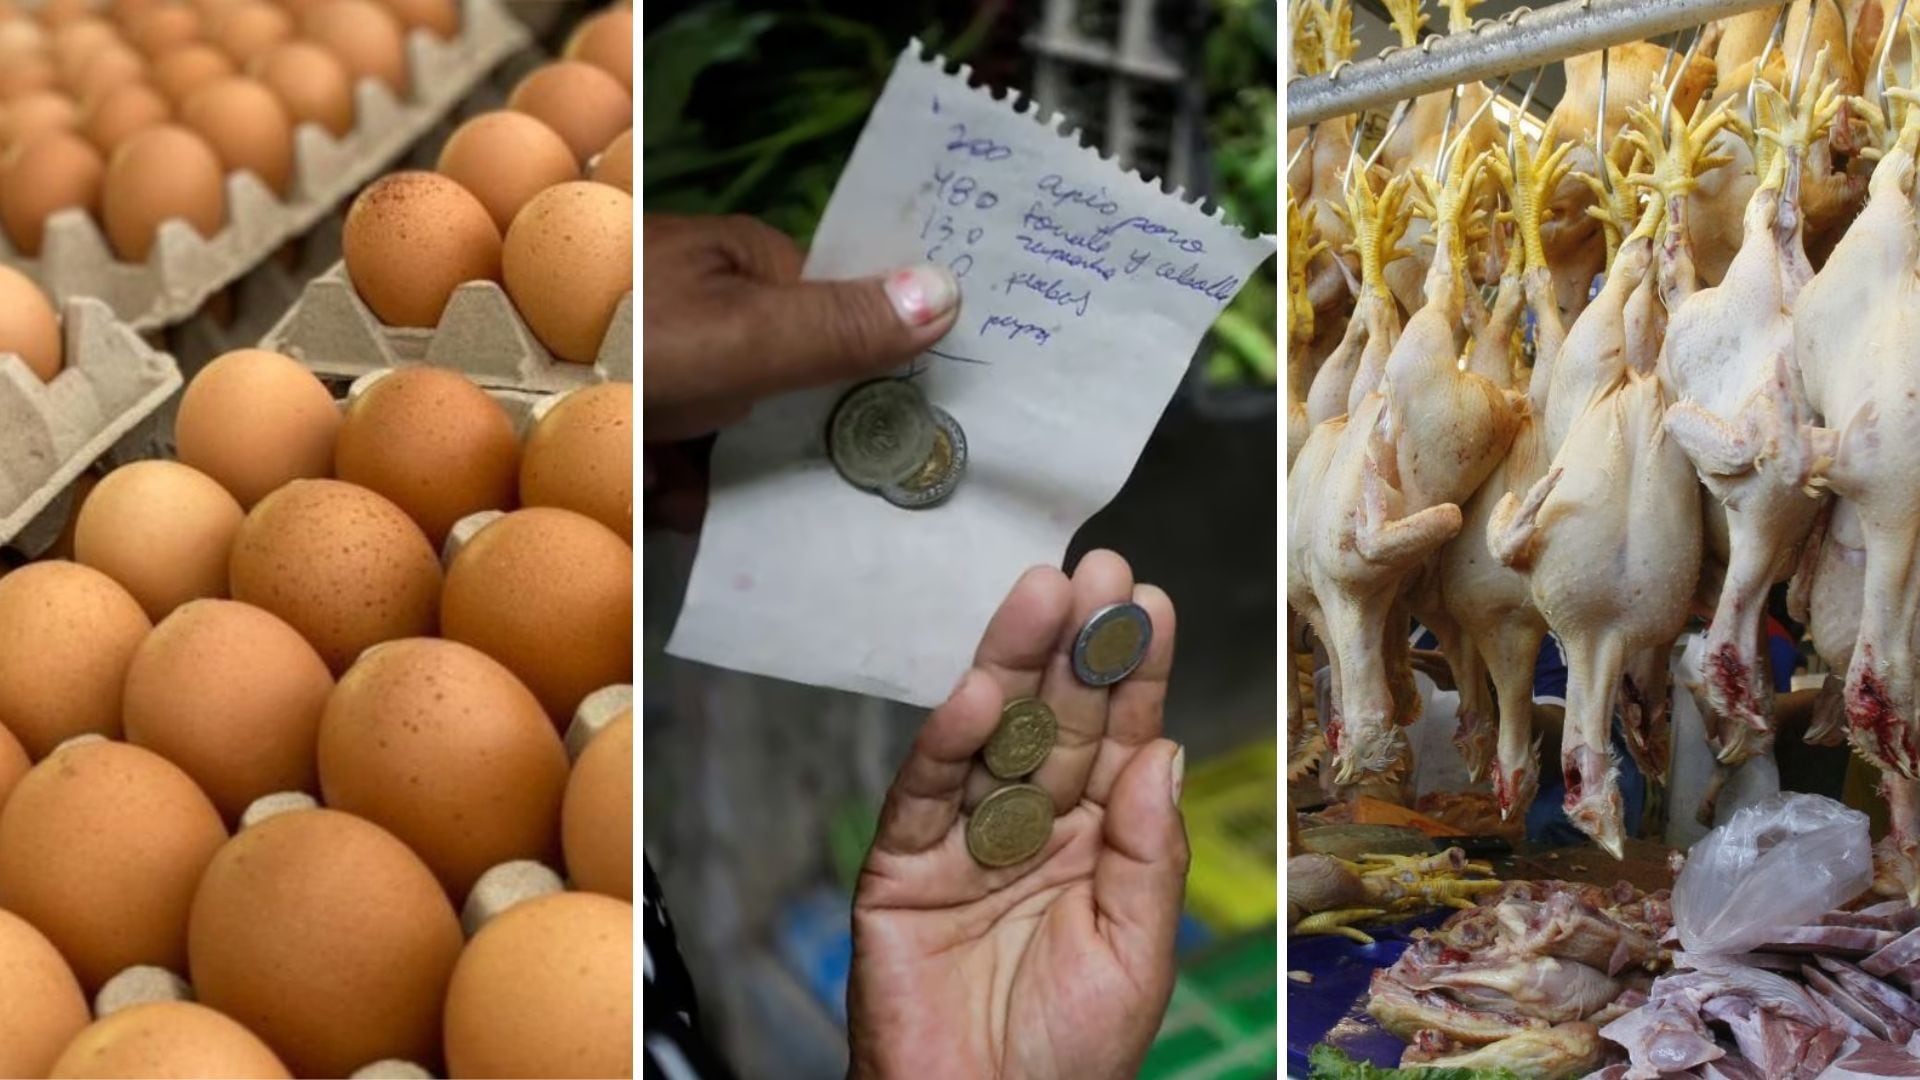 huevos, mano con dinero, y pollo en mercados de Lima